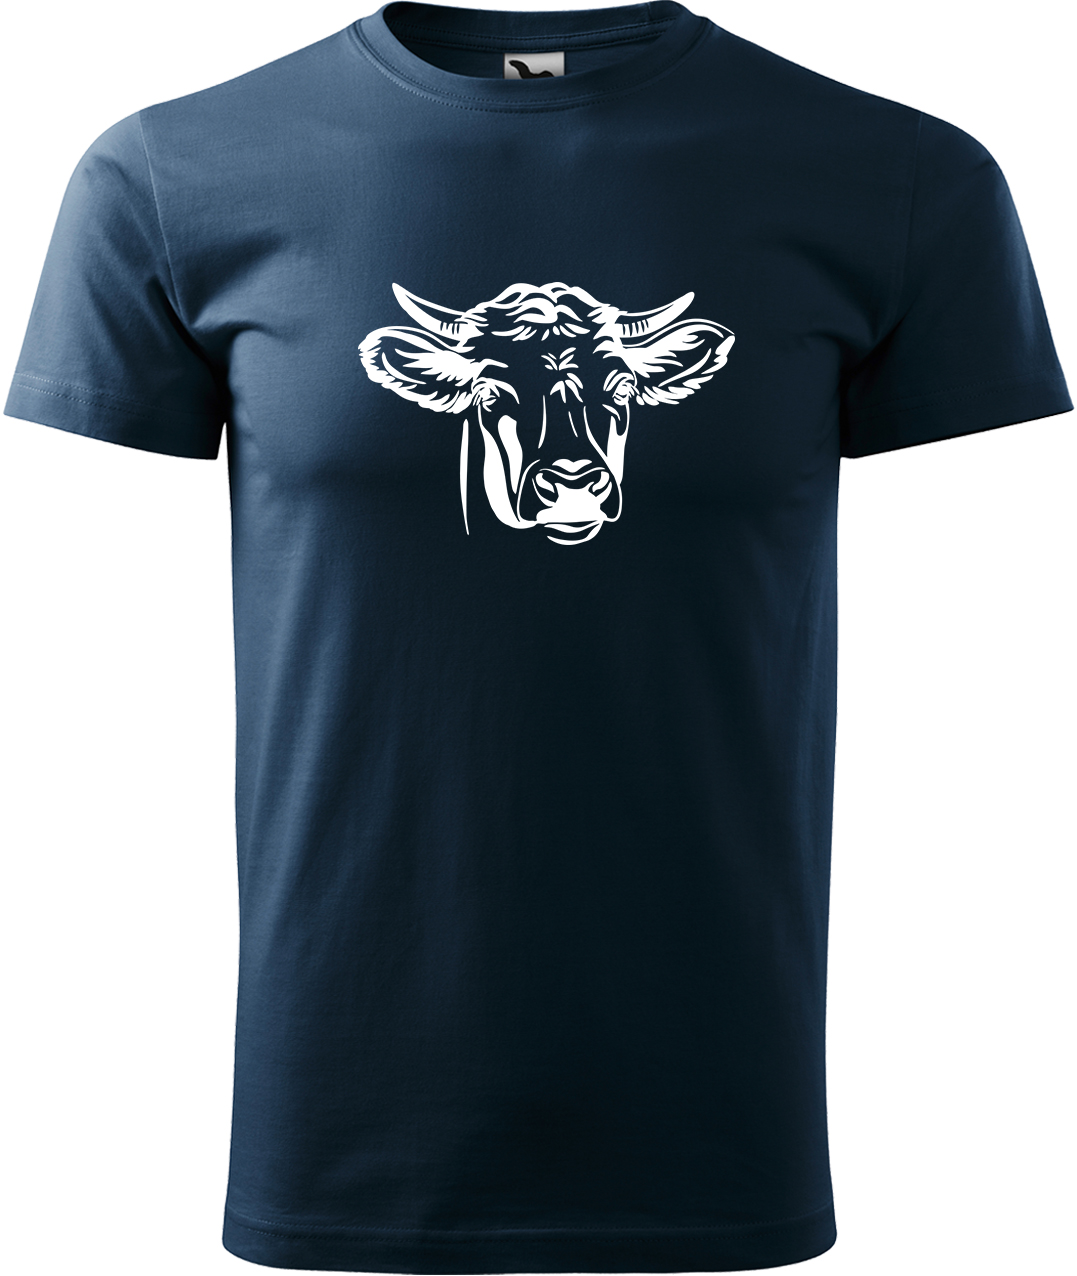 Pánské tričko s krávou - Hlava krávy Velikost: S, Barva: Námořní modrá (02), Střih: pánský